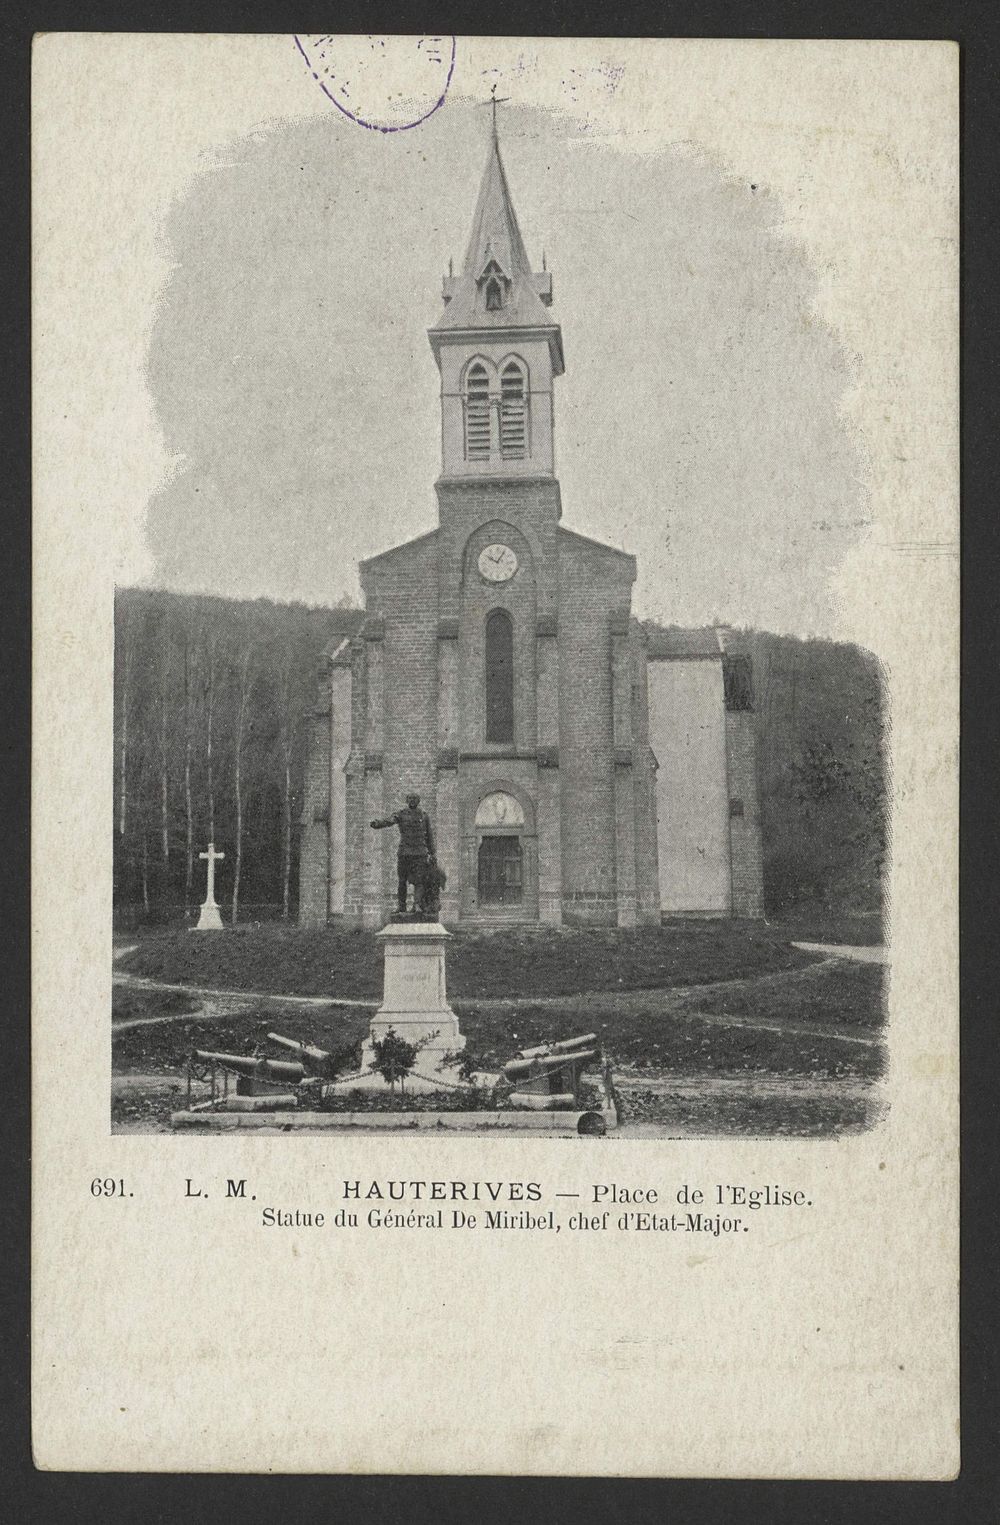 Hauterives - Place de l'Eglise. Statue du Général de Miribel, chef d'Etat-Major